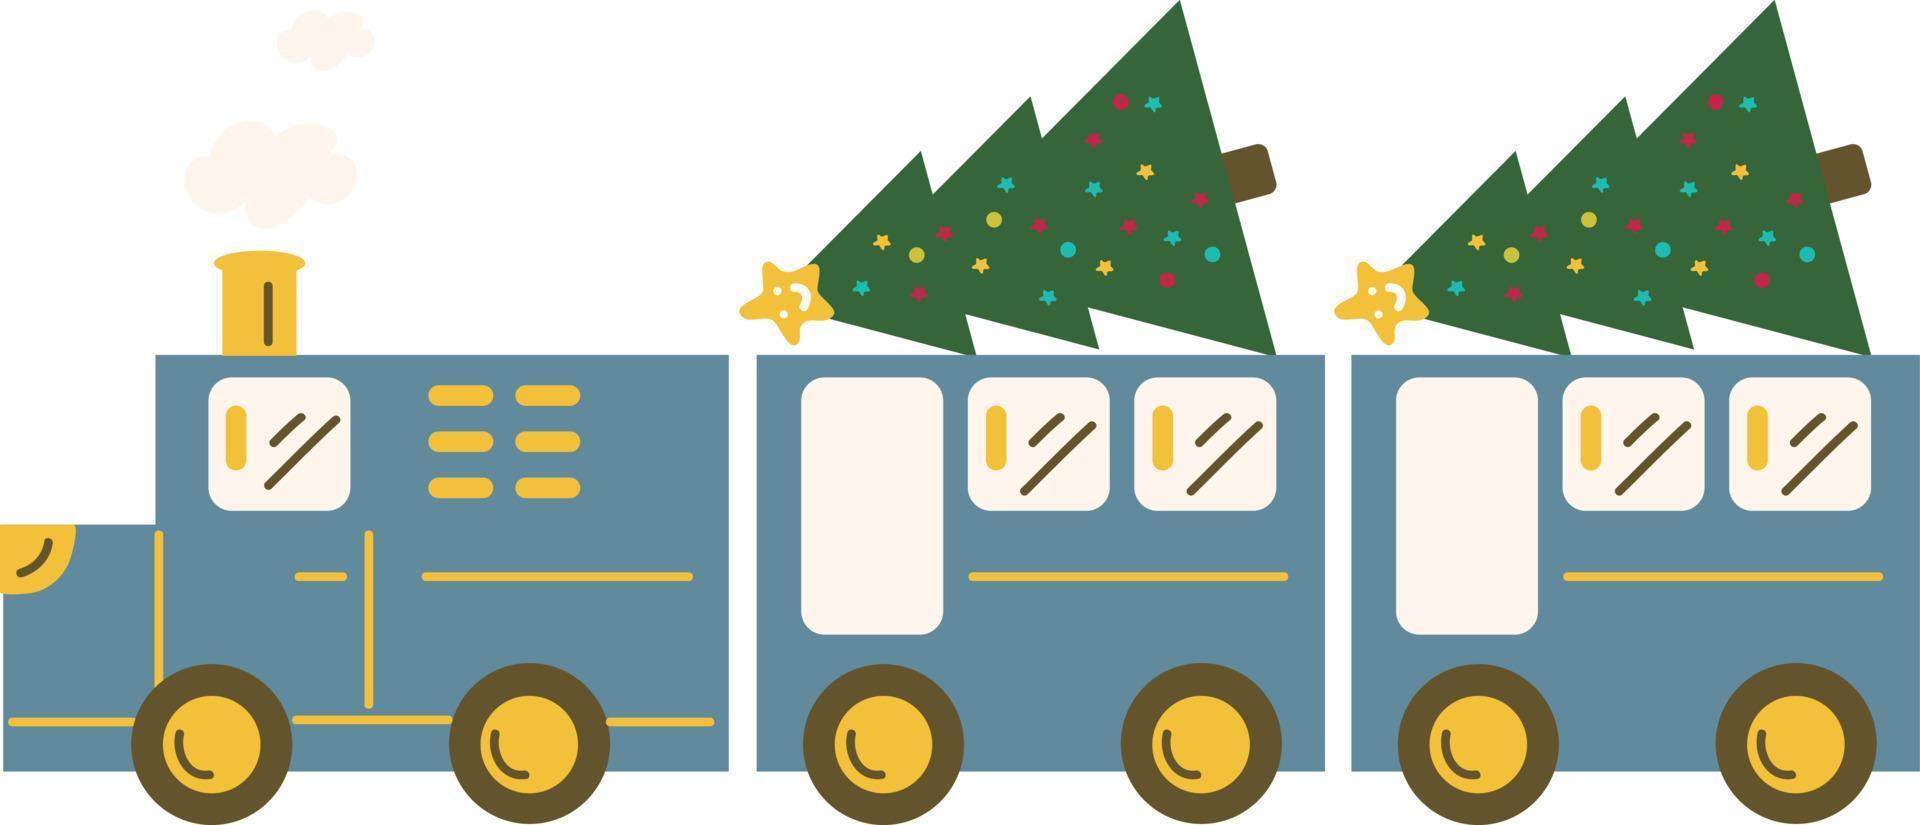 tren de navidad. guirnaldas, banderas, etiquetas, burbujas, cintas y pegatinas. colección de iconos decorativos de feliz navidad vector